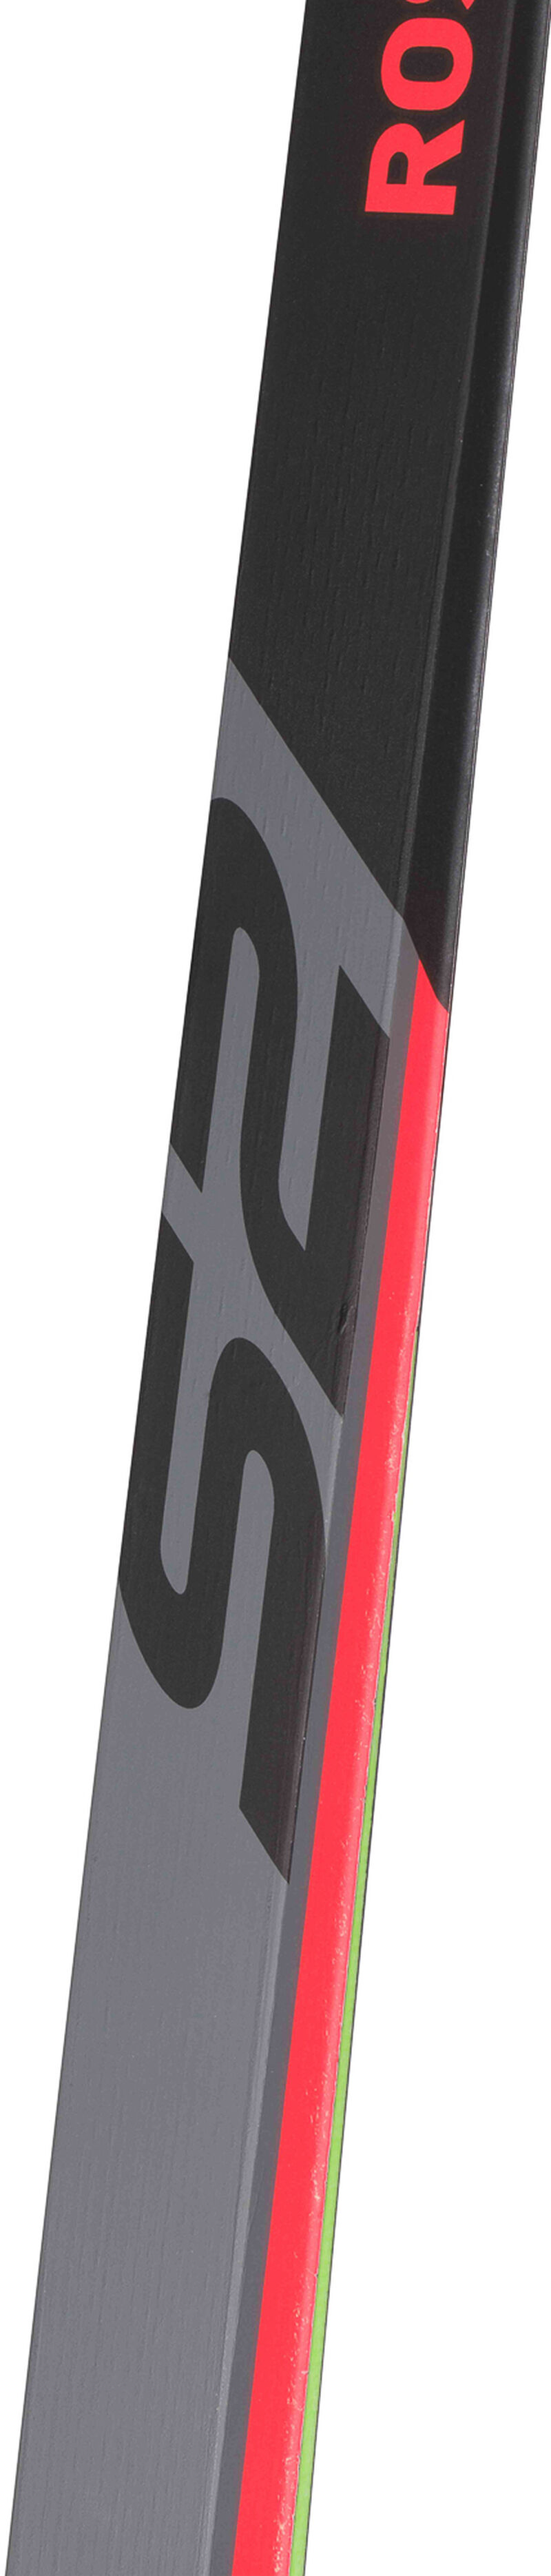 Unisex Nordic Racing Skis X-IUM SKATING PREMIUM+S2 STIFF